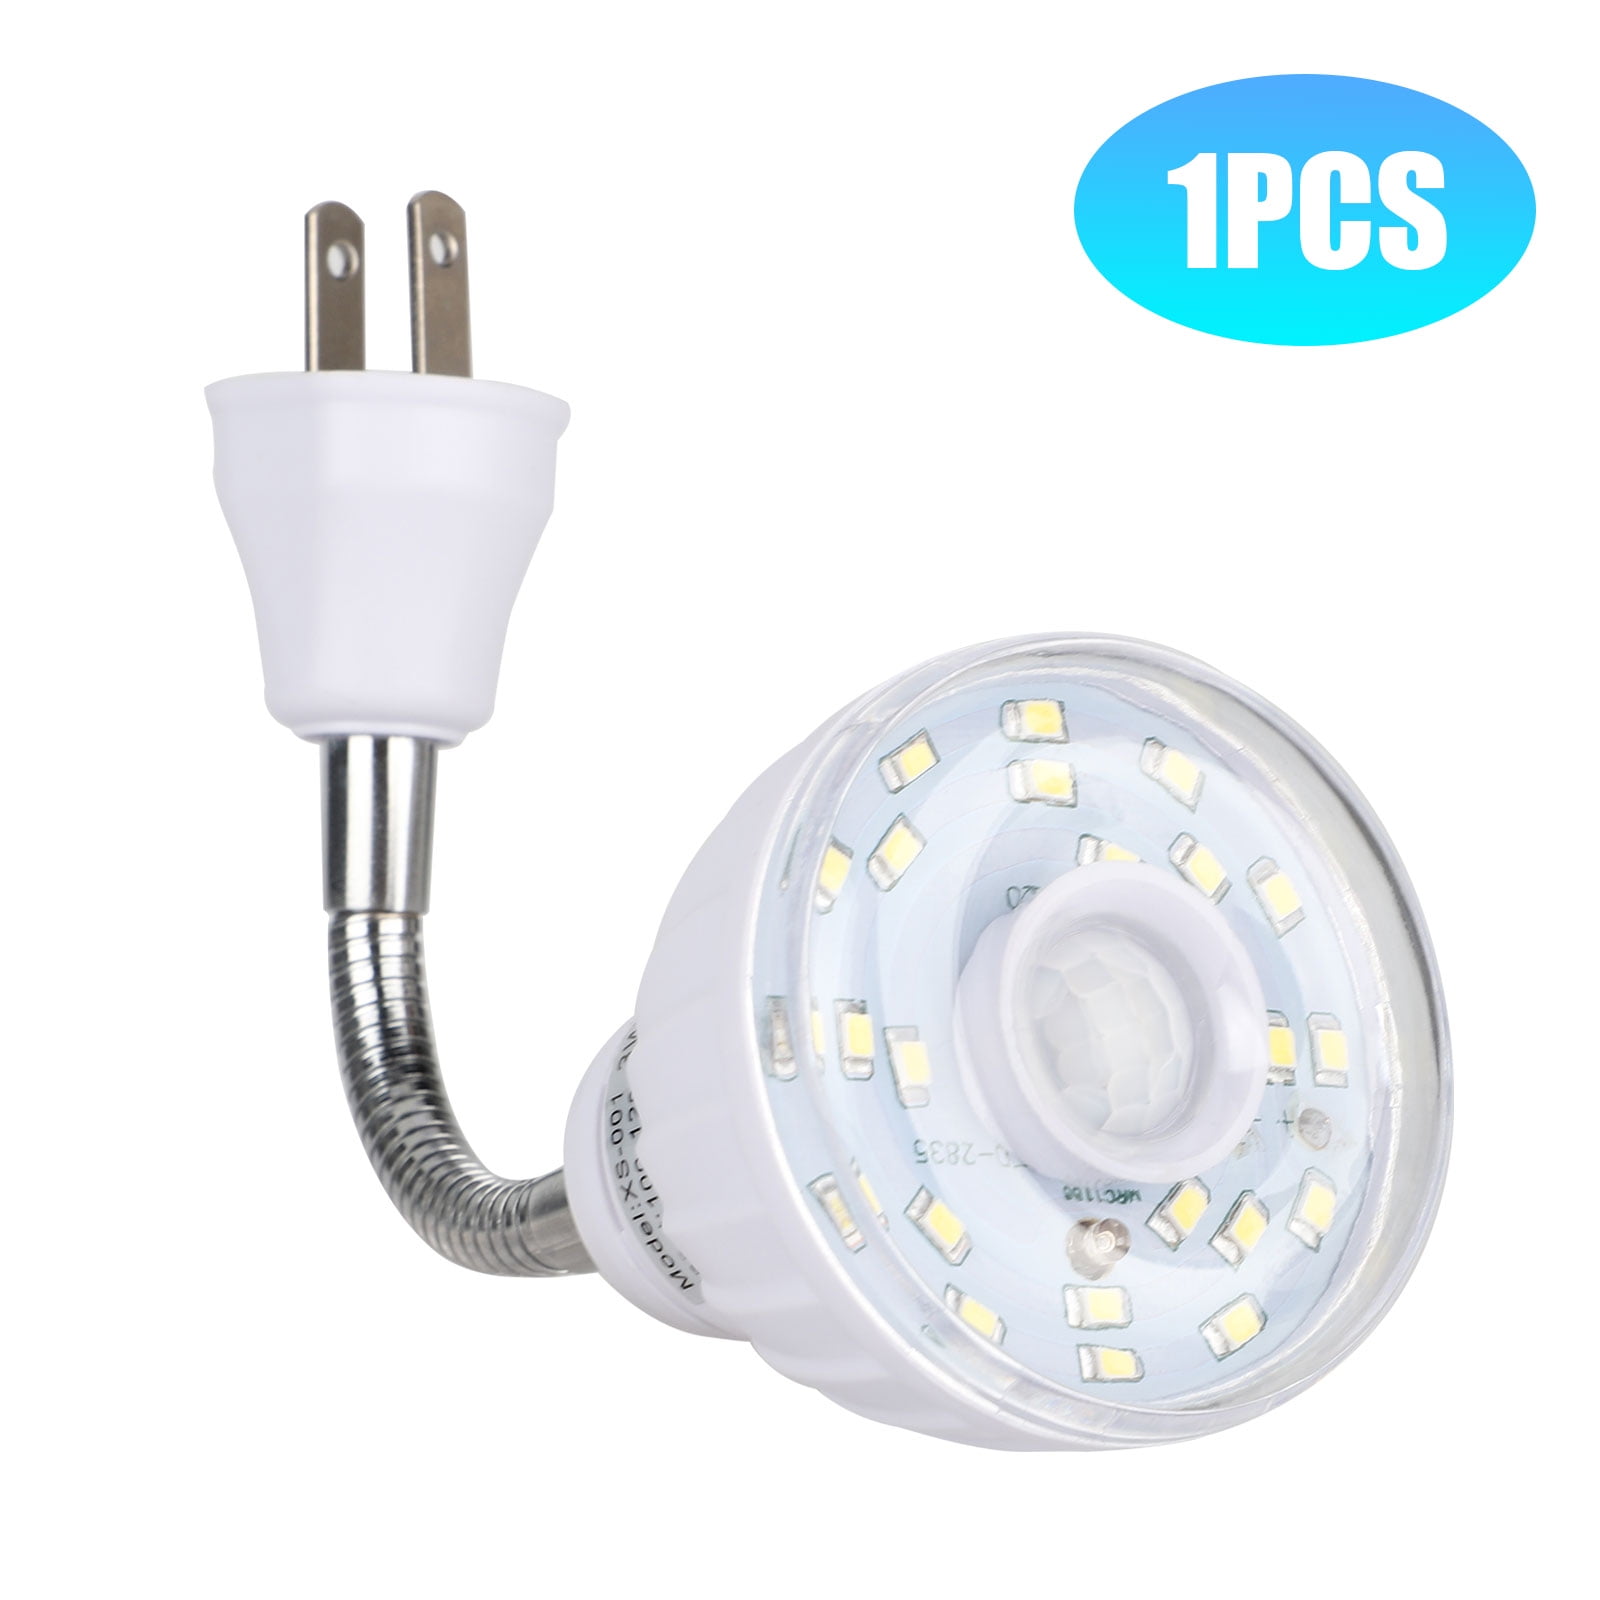 Plug In Light Sensor Hallway Bedroom Plug Socket LED Safety Night Light 